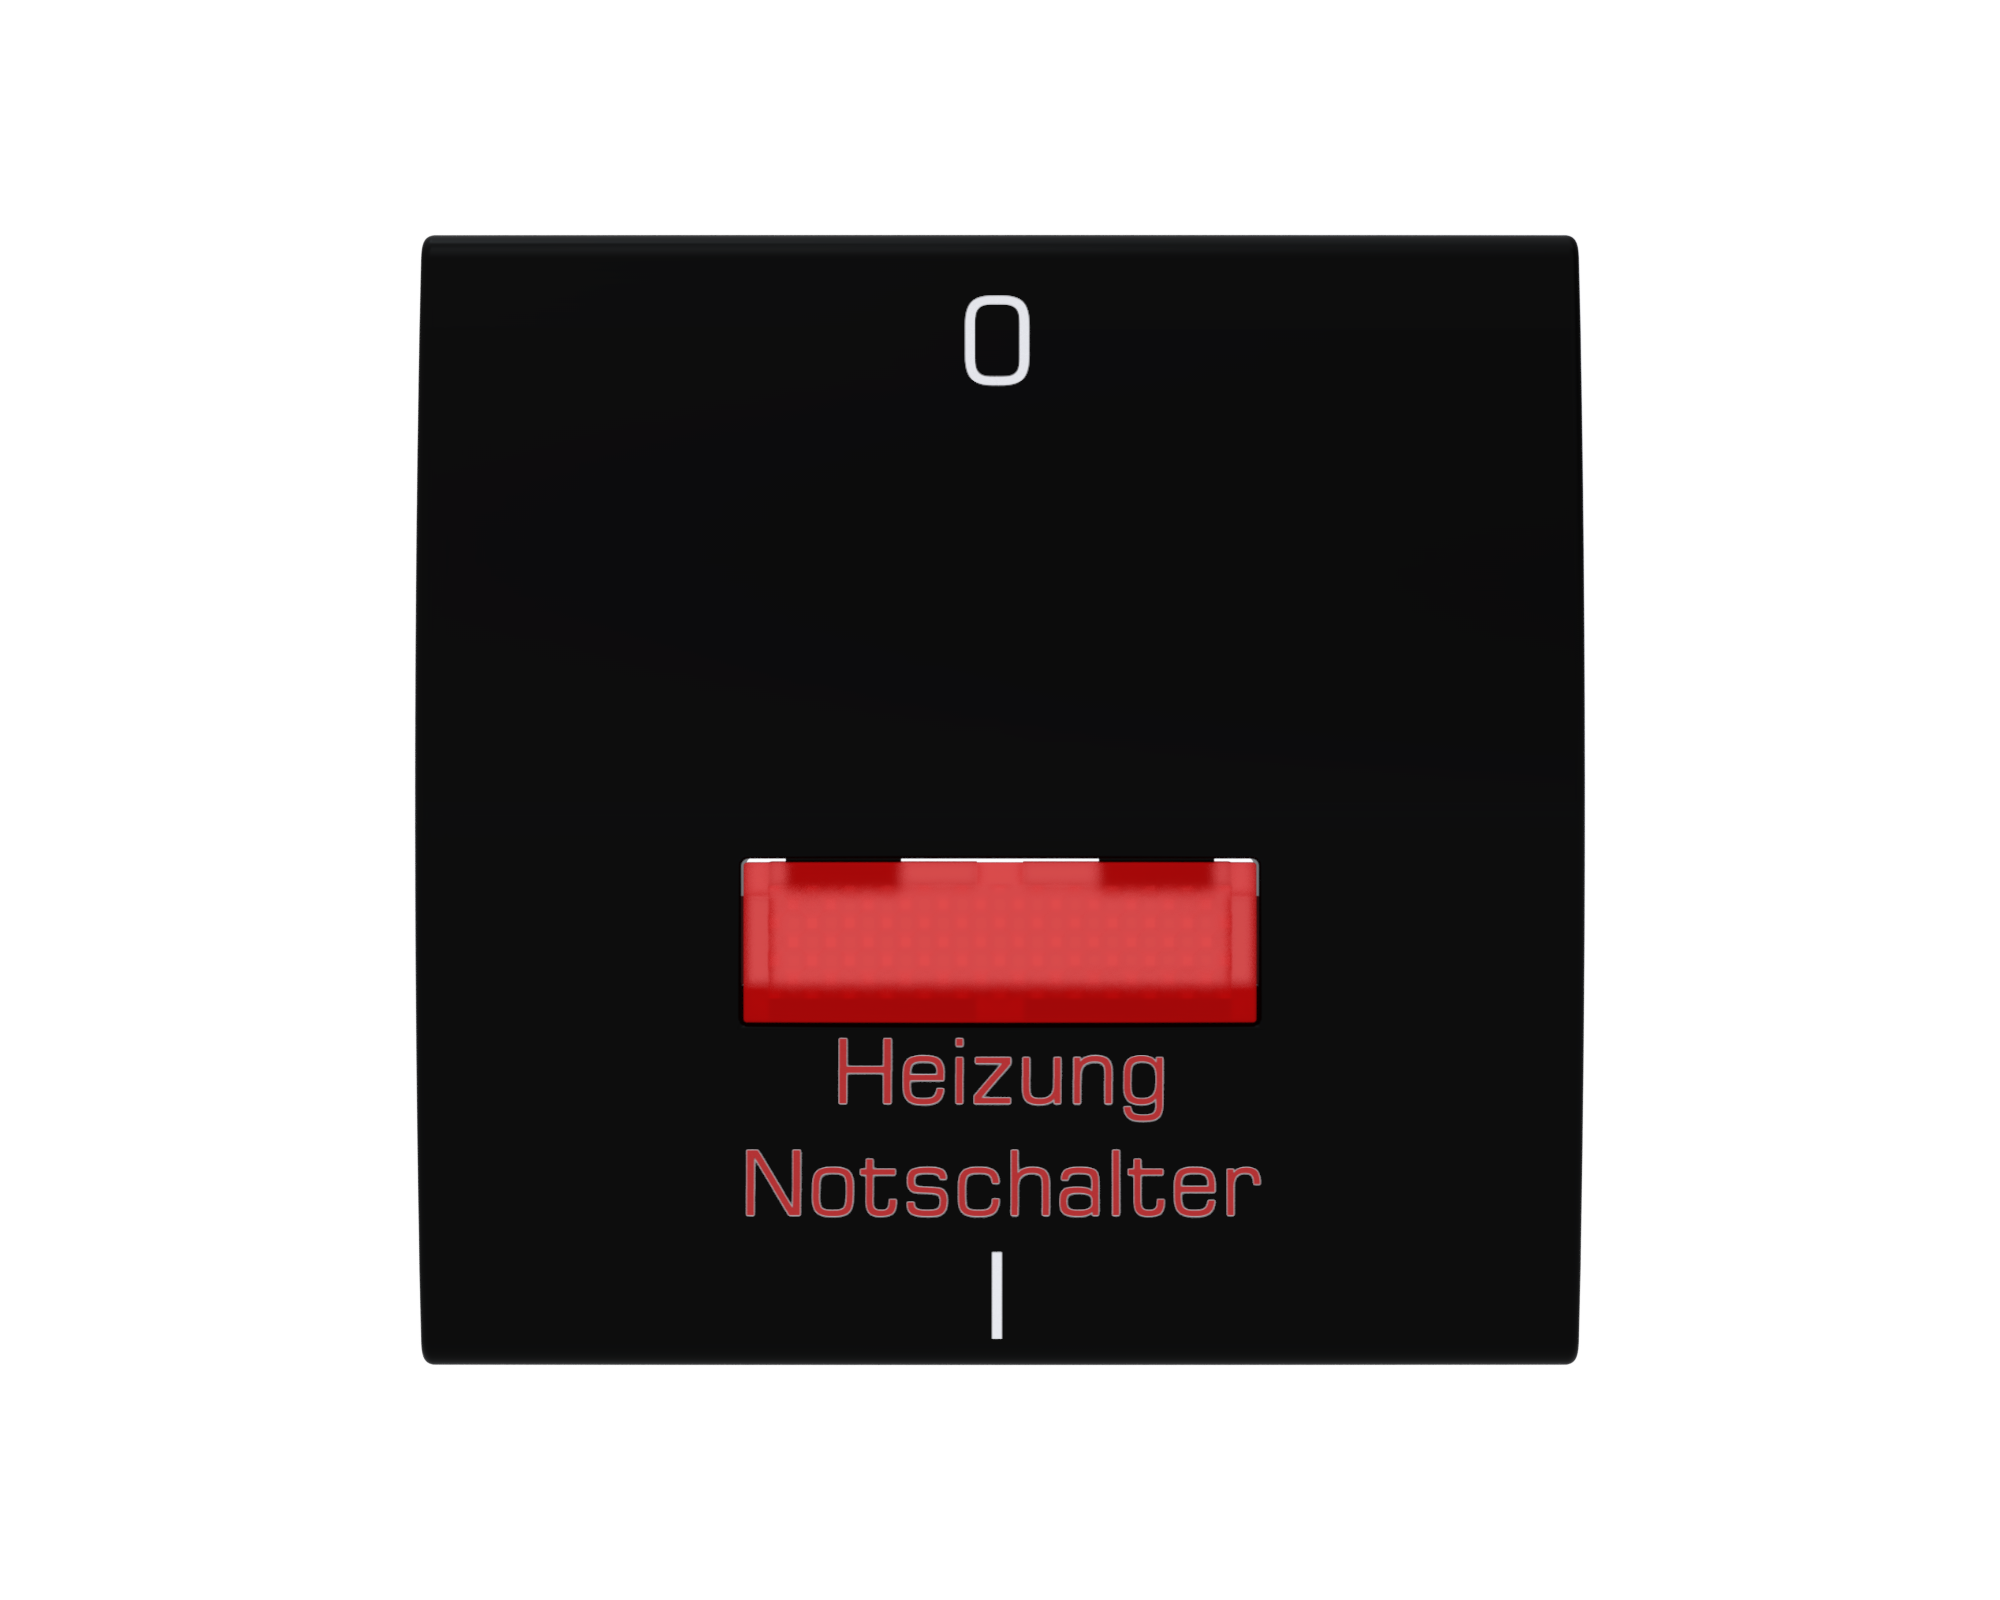 Rüthen Flächenwippe "Heizung Notschalter" mit Linse rot und Symbol 0 + I schwarz